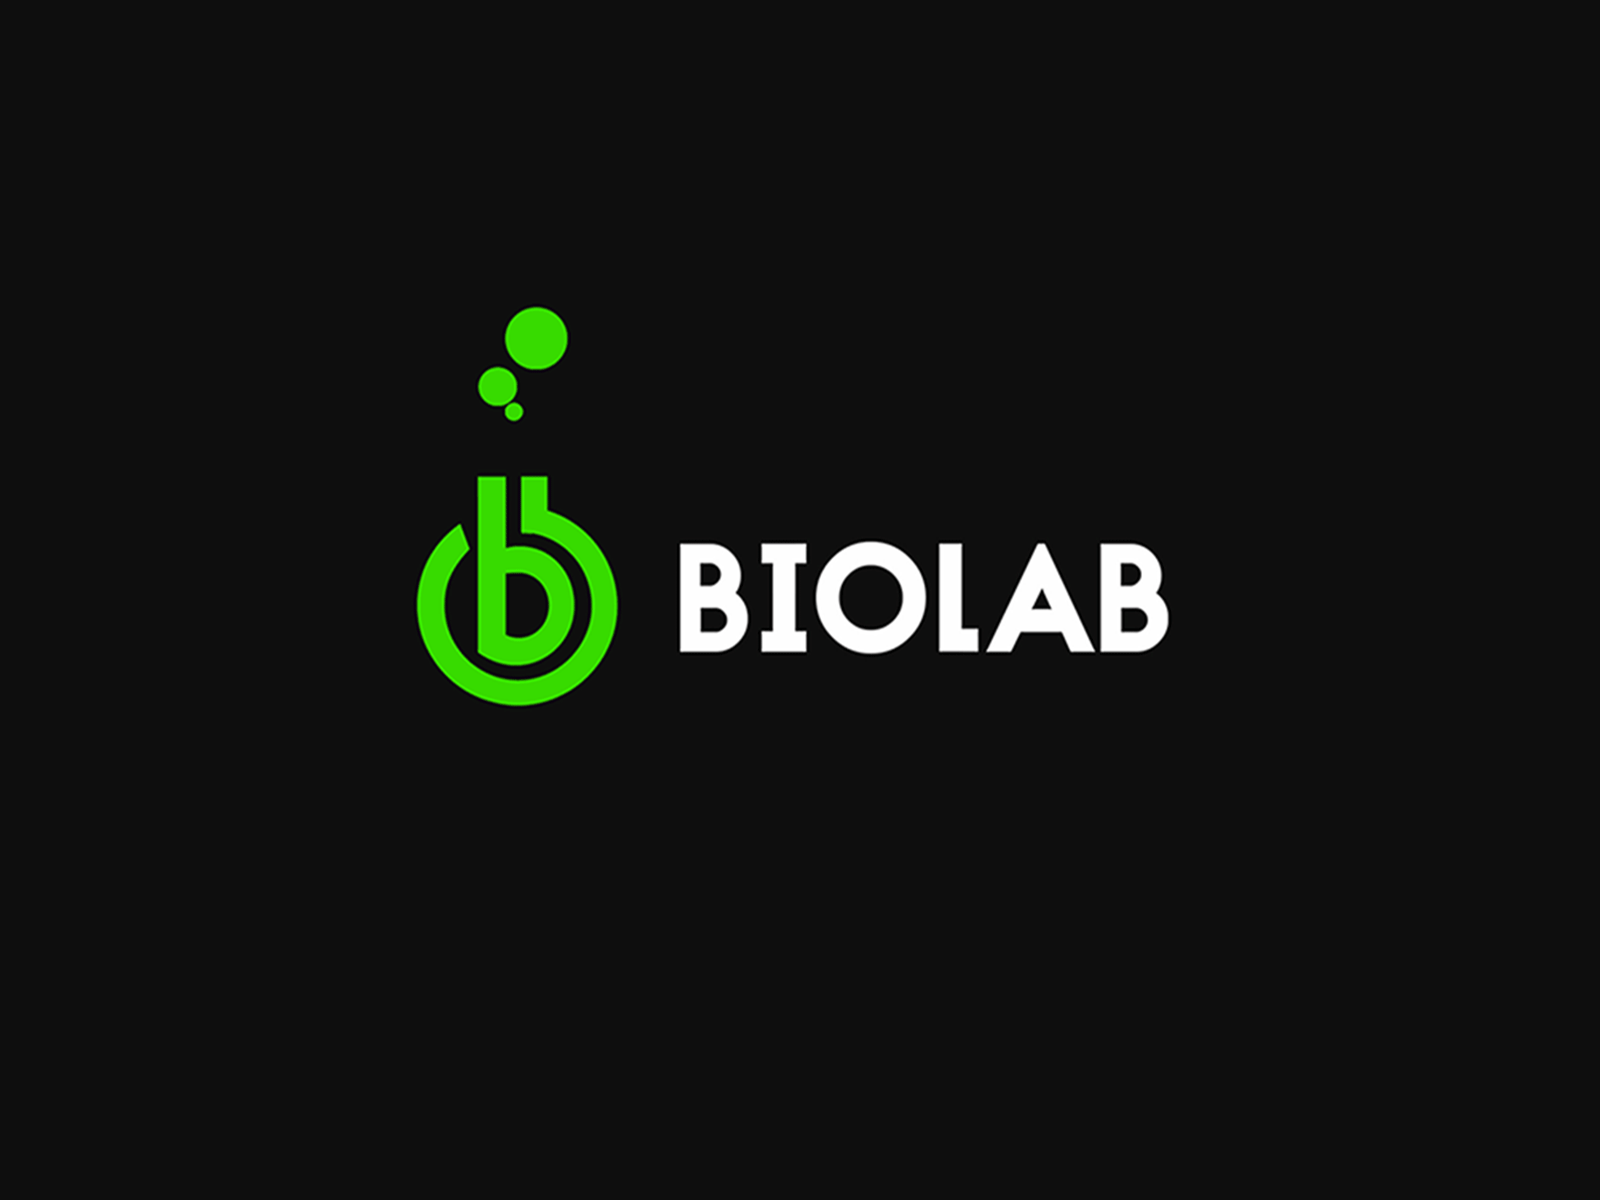 BIOLAB LOGO animation branding branding design design graphic design logo logo design logo designer logos